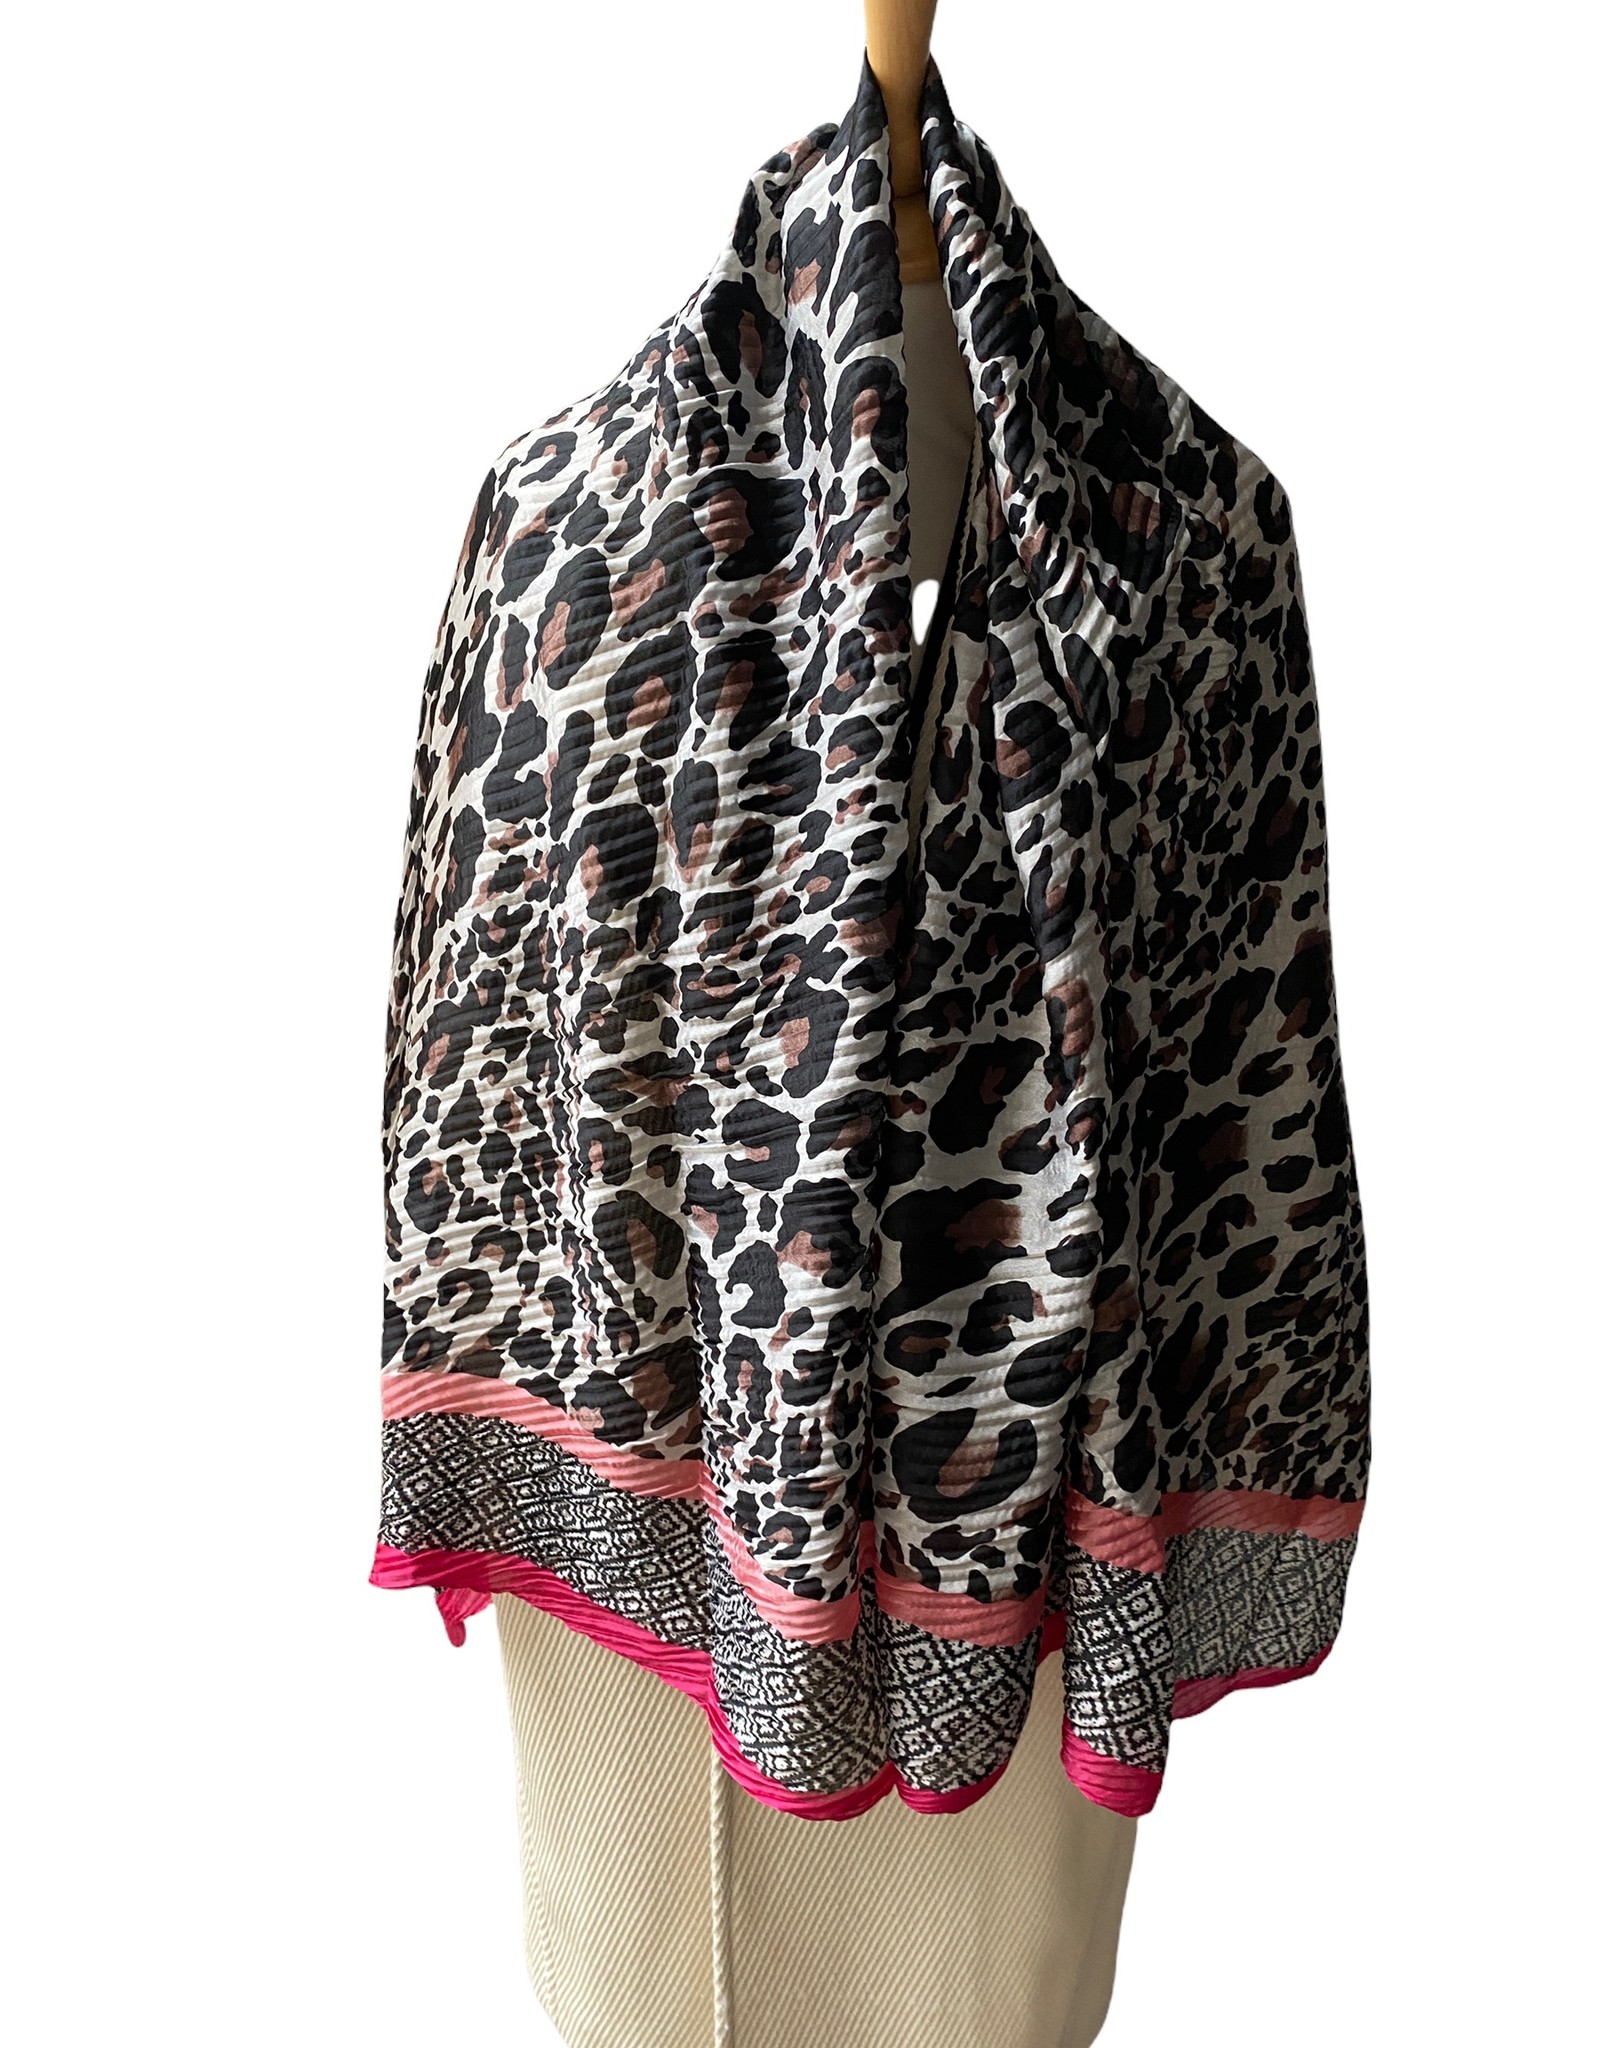 Plissé satin scarf long model, black/white with pink